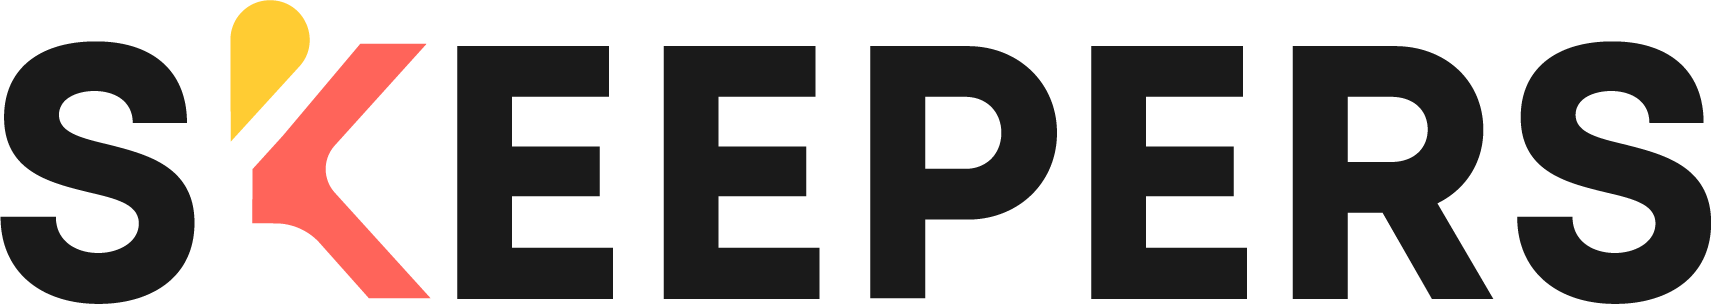 Logo Skeepers